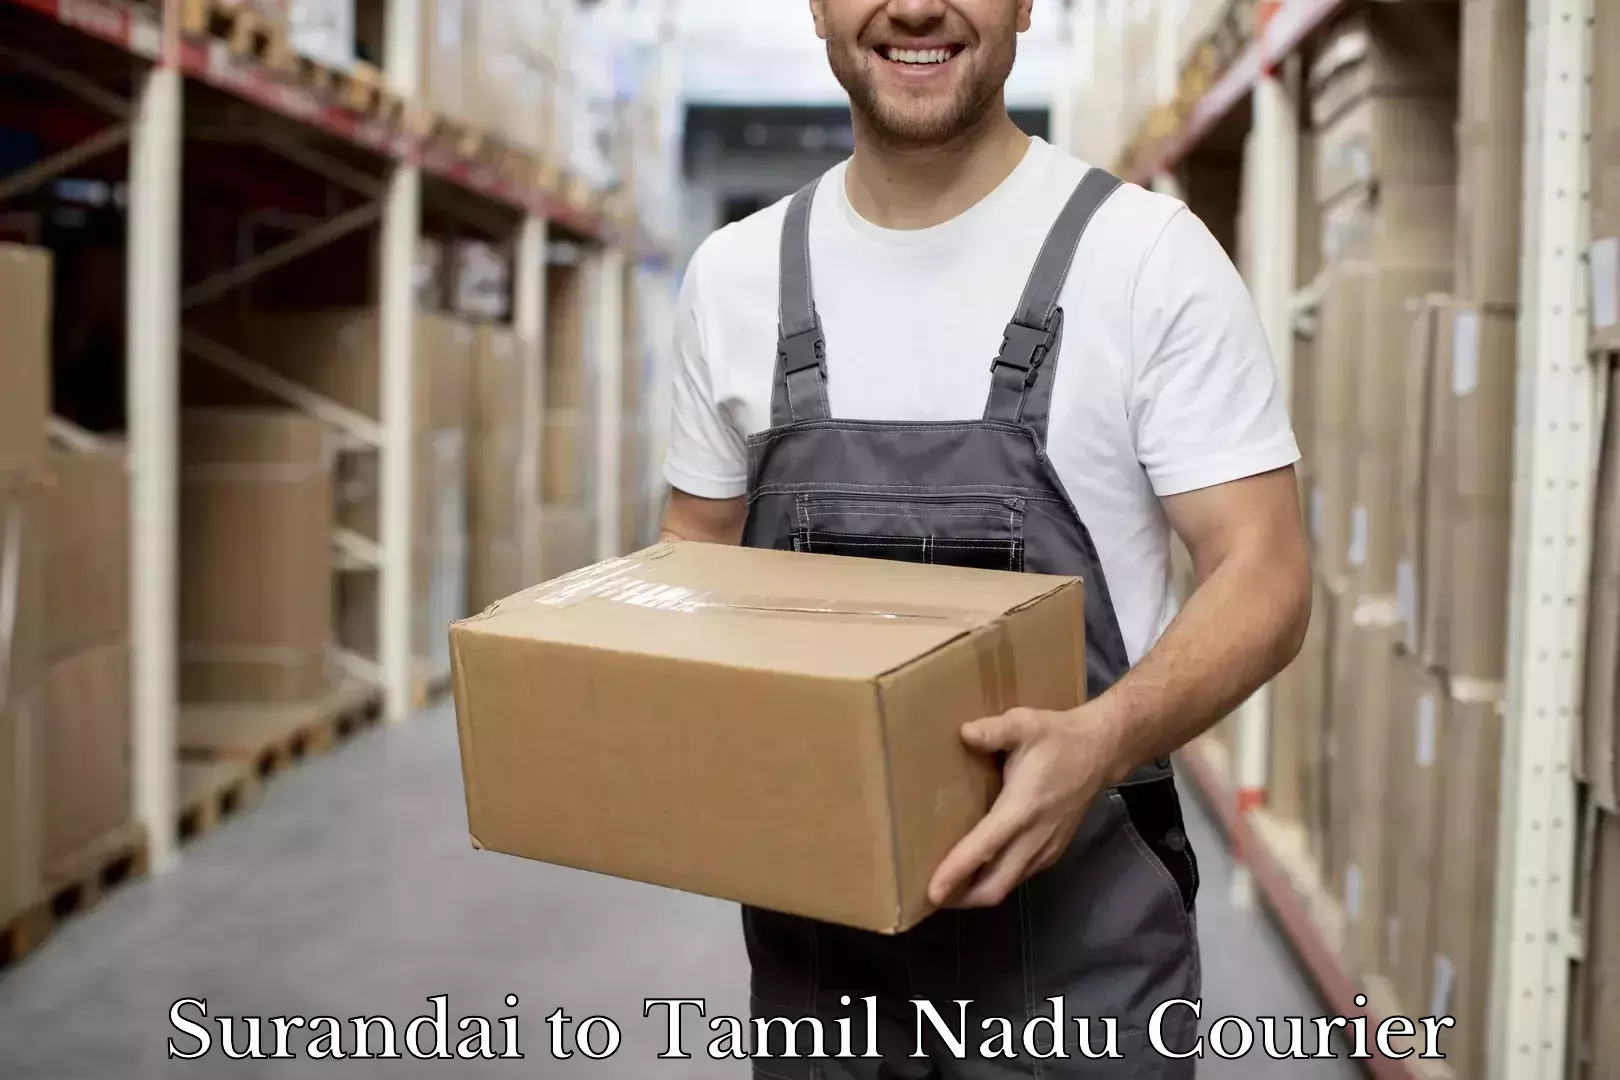 Baggage shipping experience Surandai to Tiruturaipundi